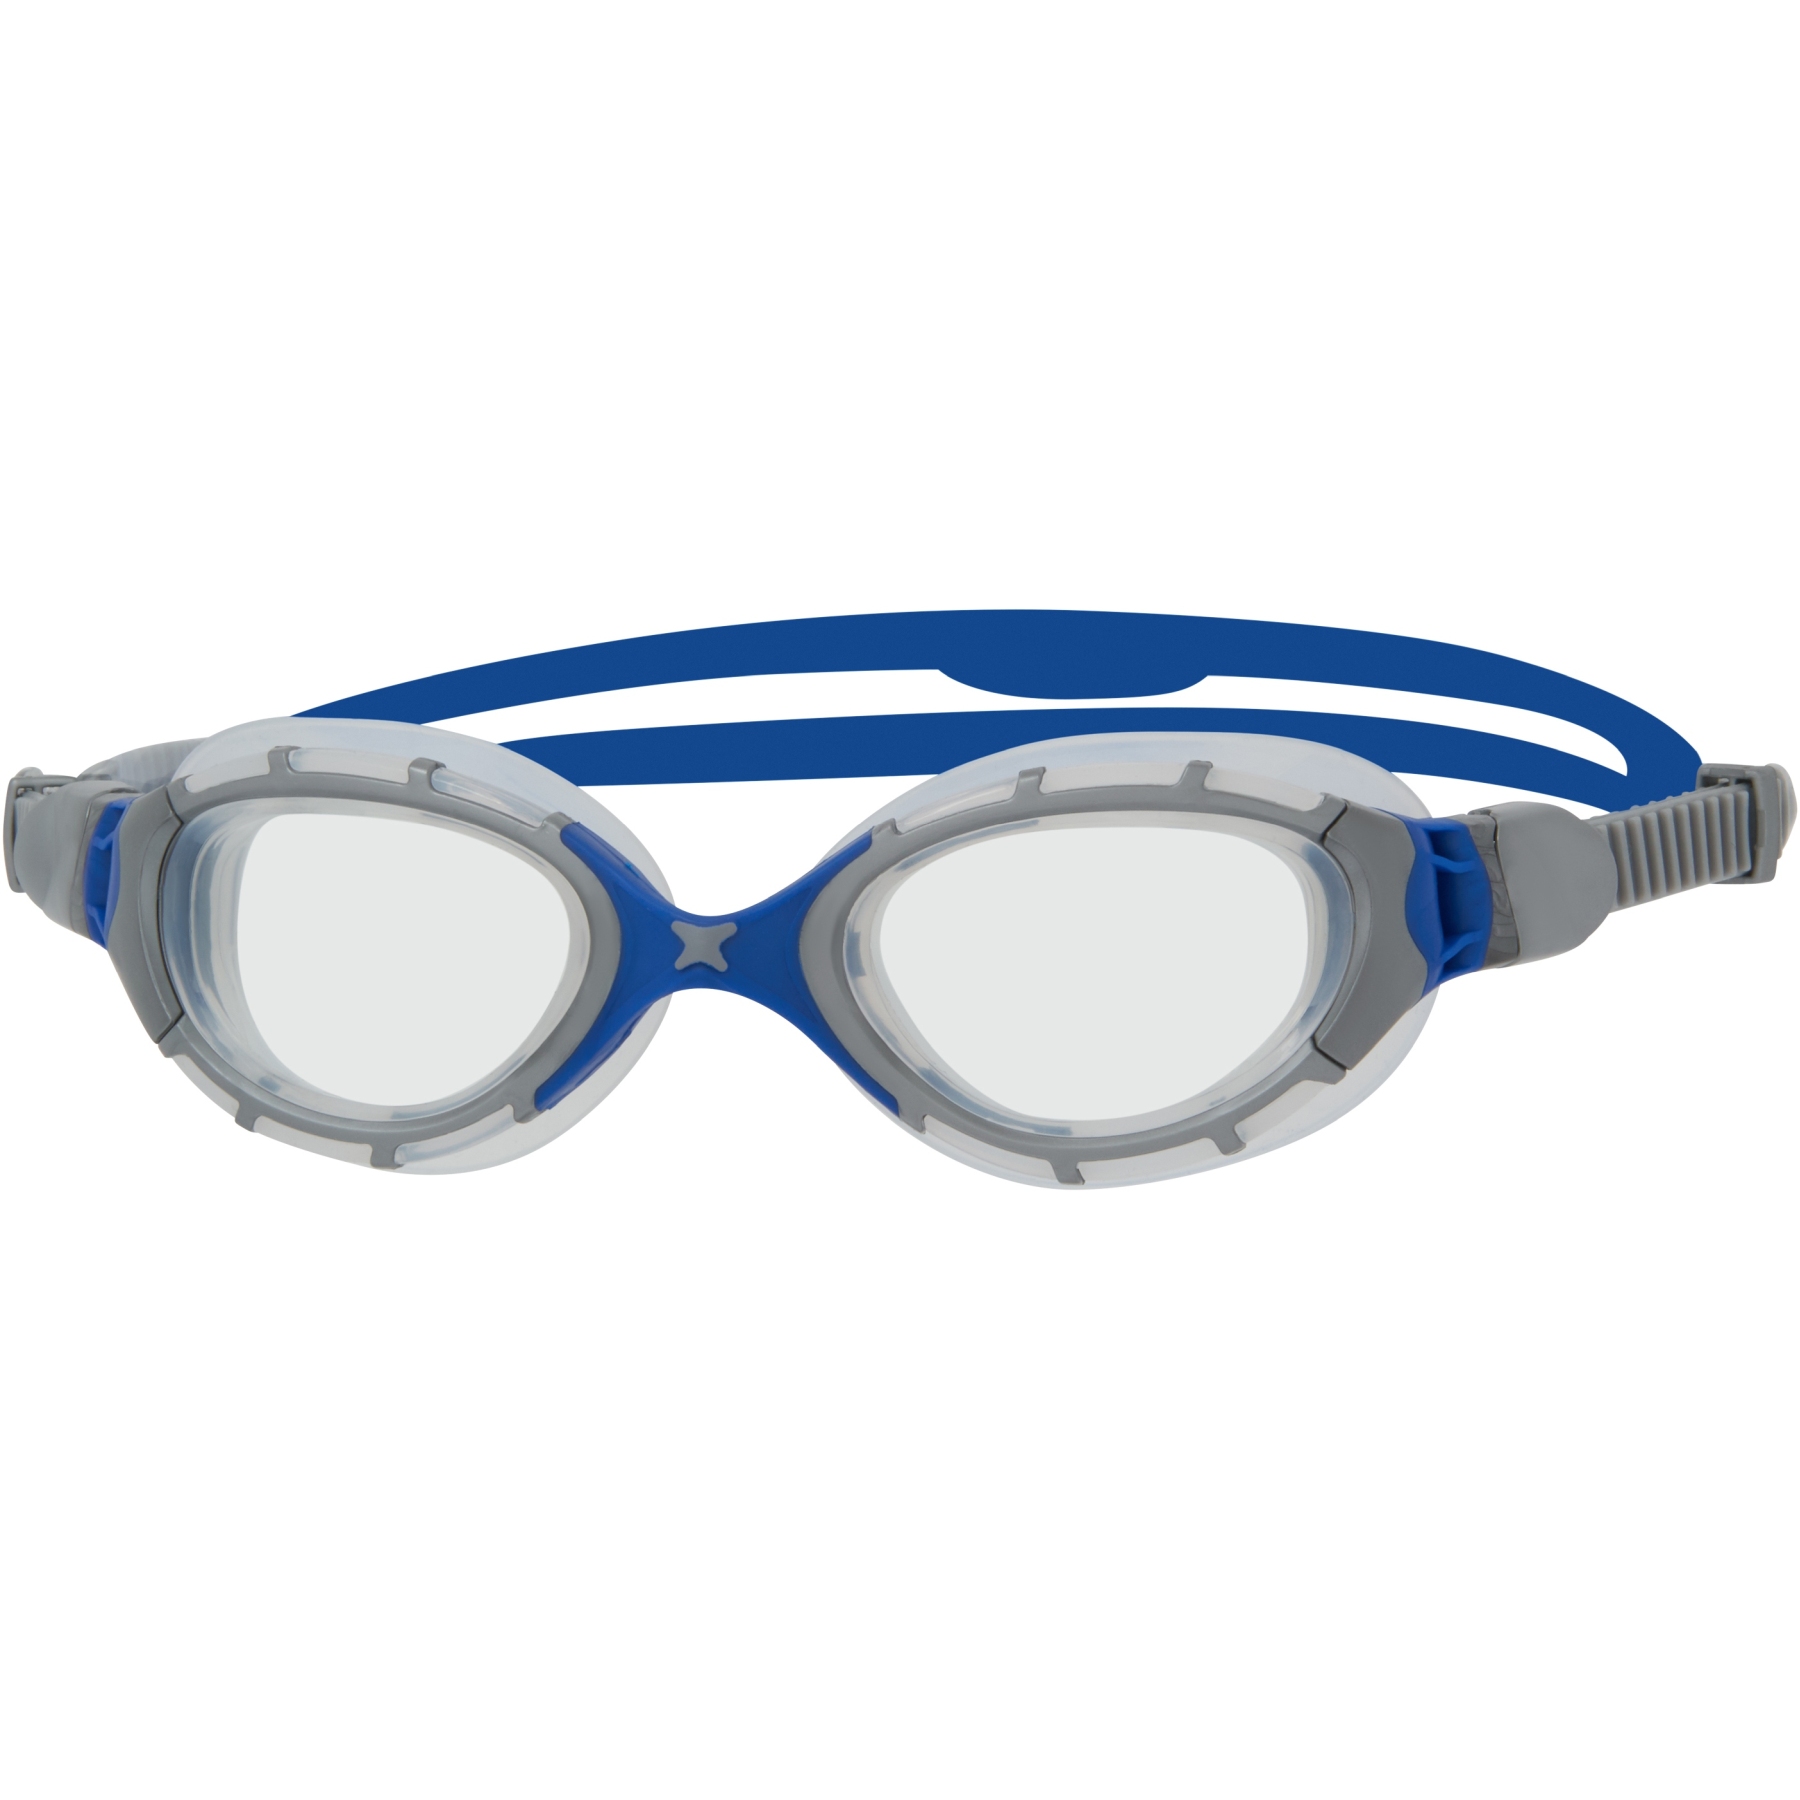 Immagine prodotto da Zoggs Predator Flex Swimming Goggles - grey/blue/clear